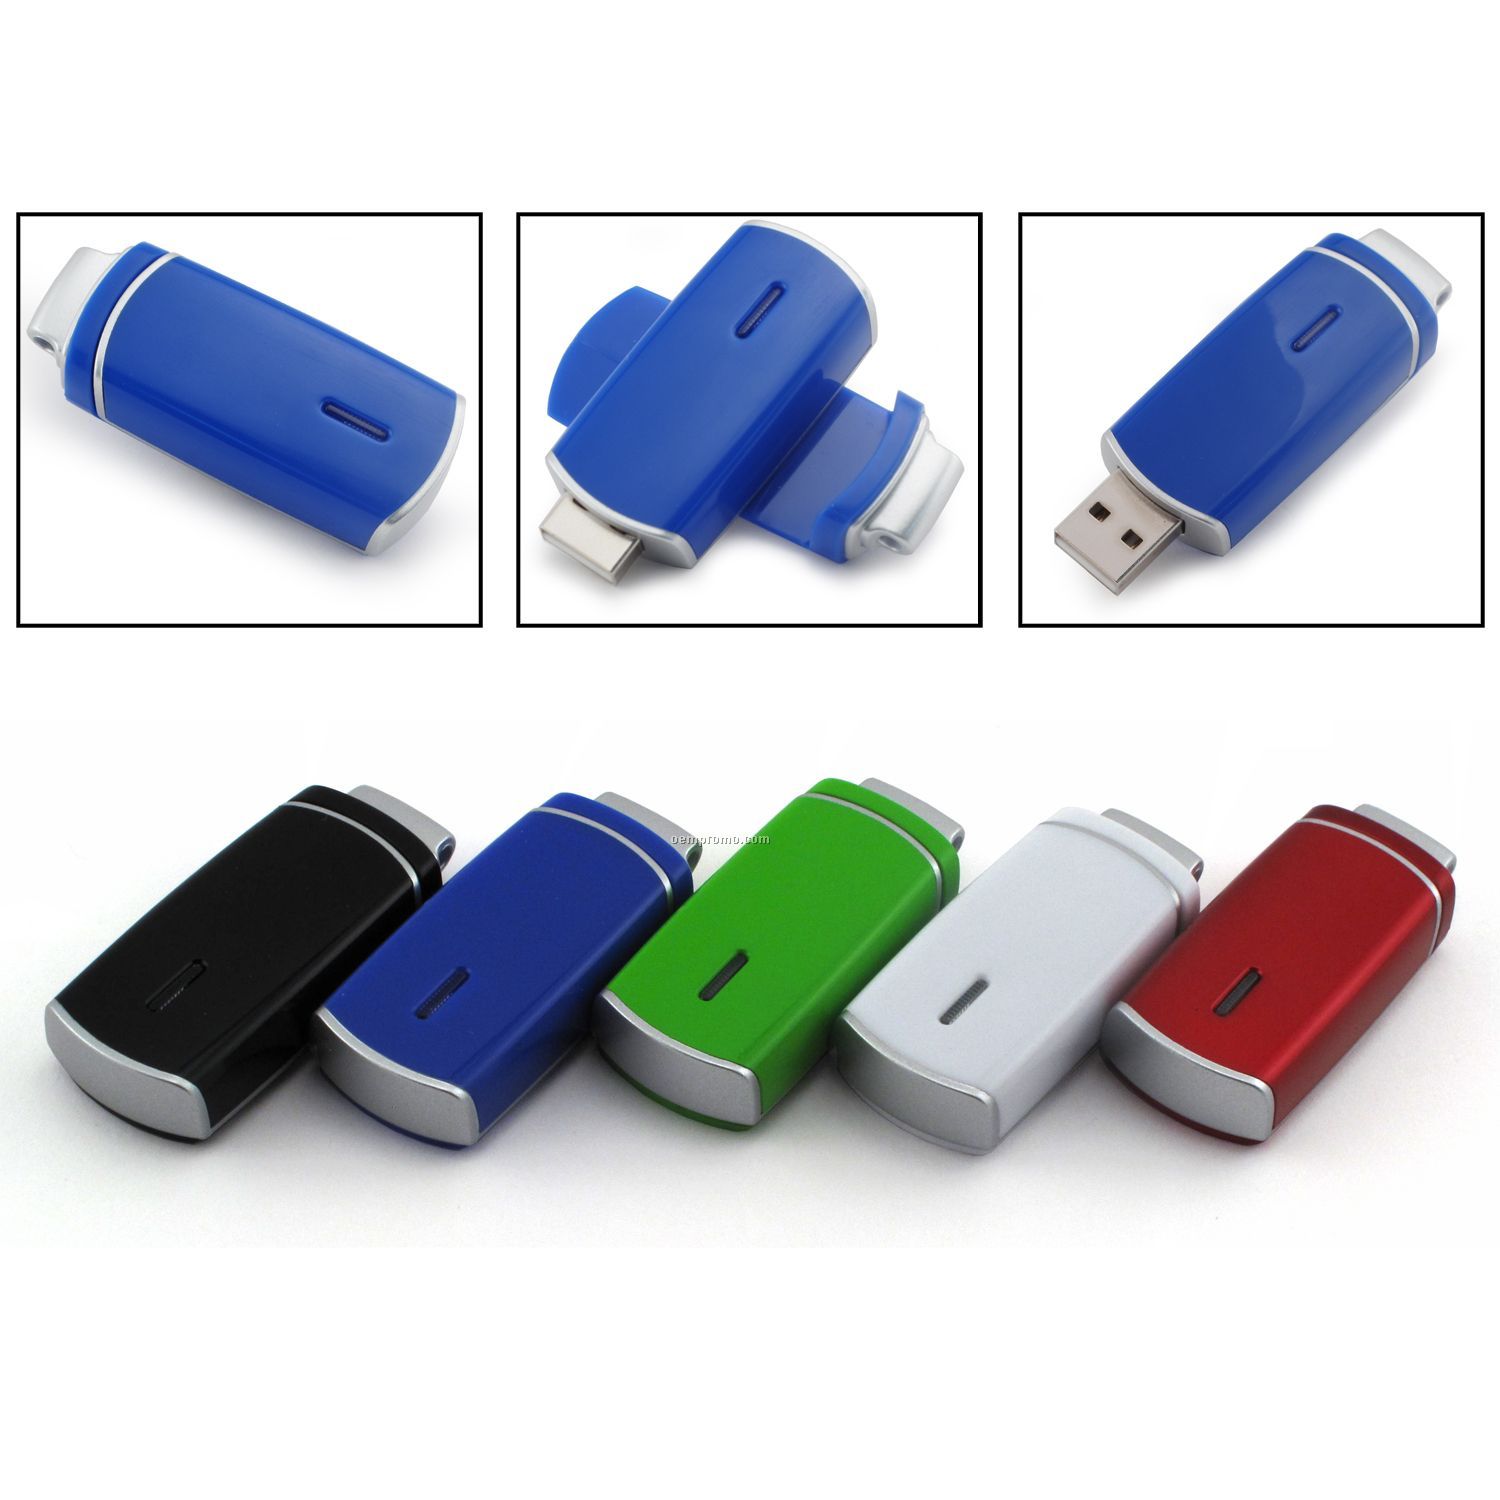 4 Gb USB Swivel 1200 Series